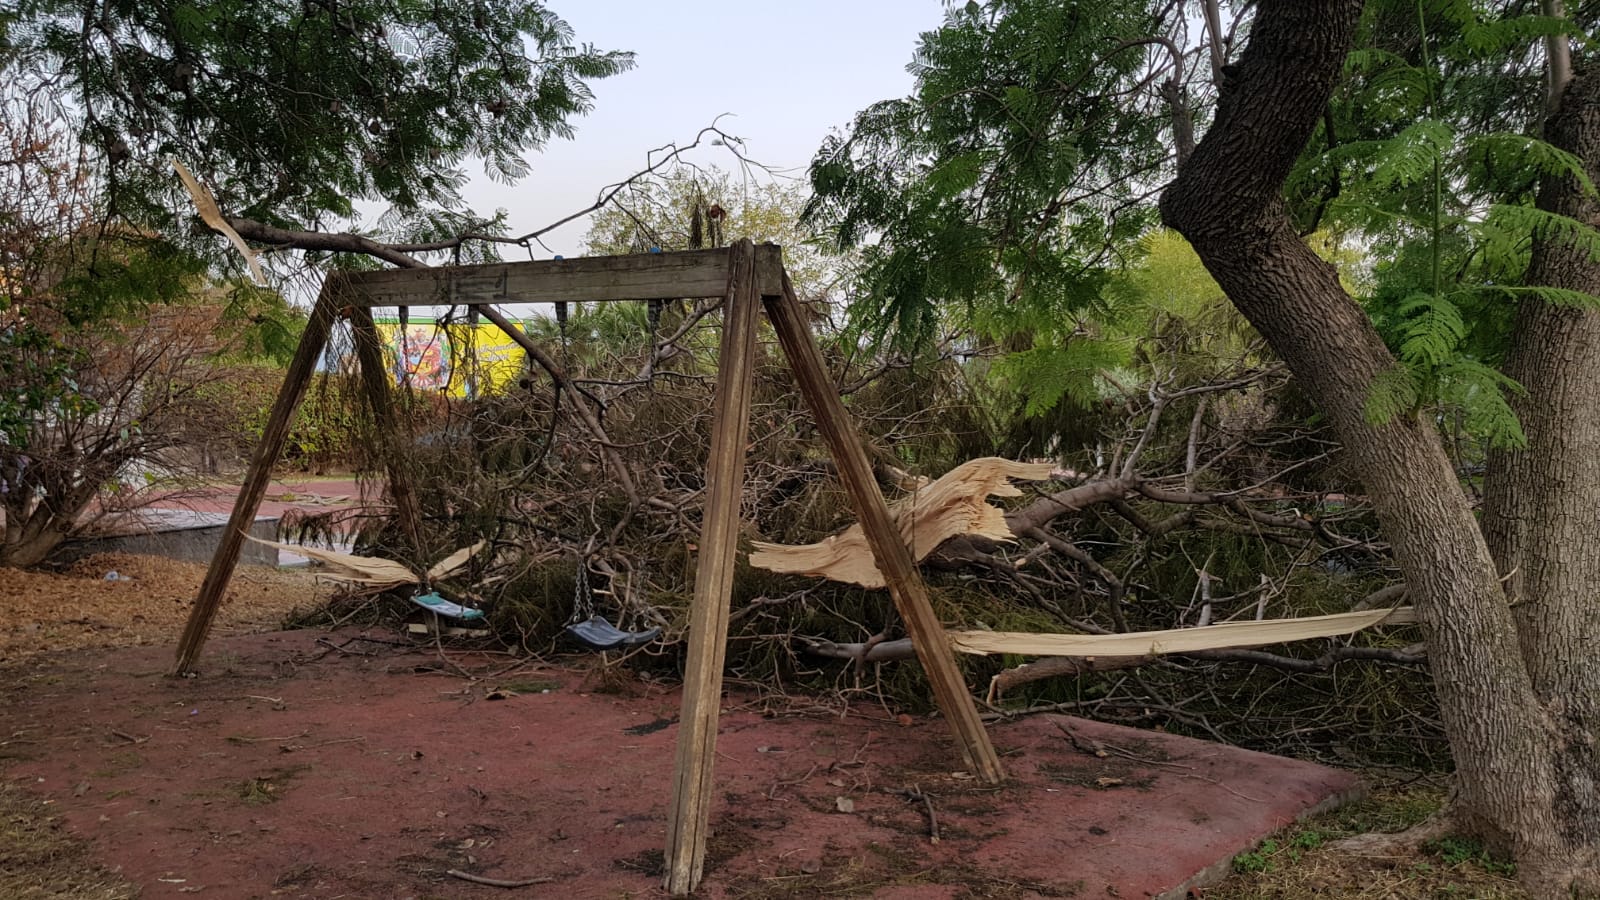 Pericolo al parco Gandhi, grosso ramo spezzato accanto all’altalena. Zingale: “Serve intervento urgente”